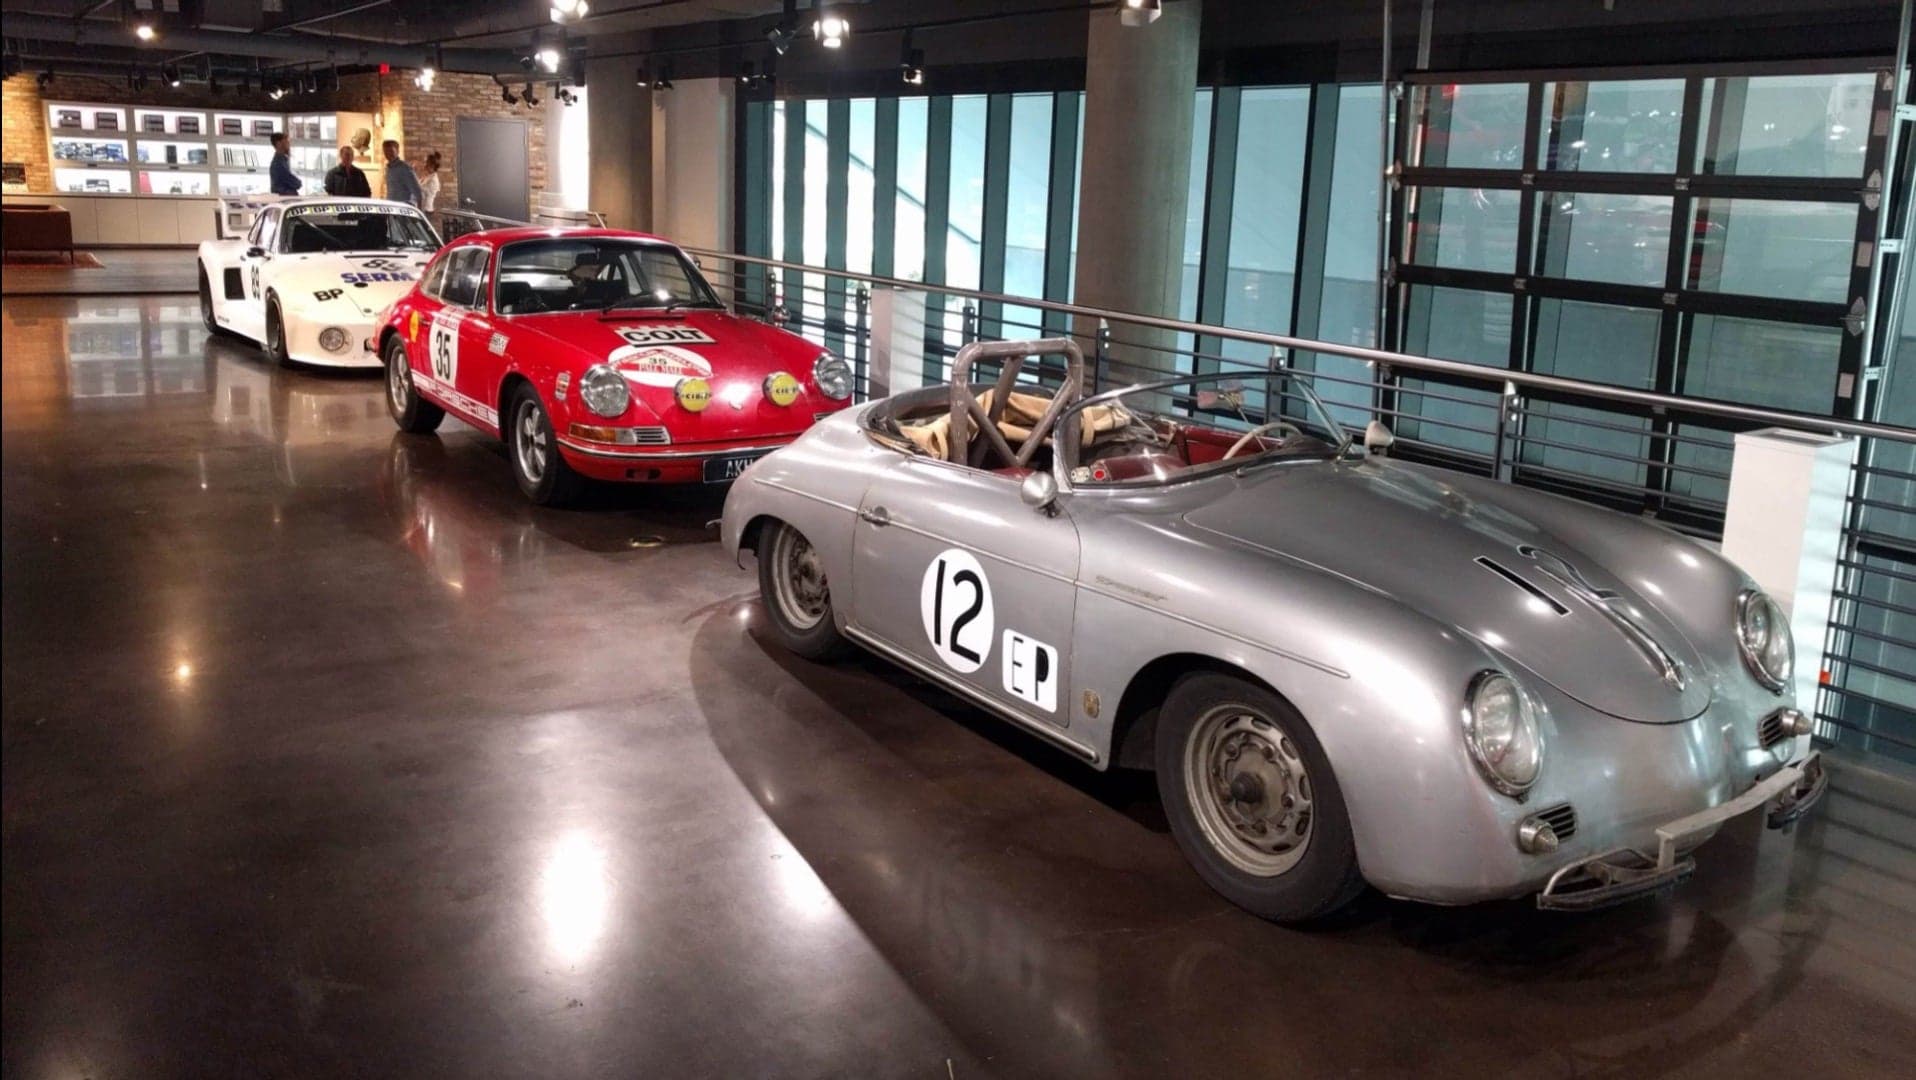 New “As Raced” Display Opens At Porsche Experience Center Atlanta